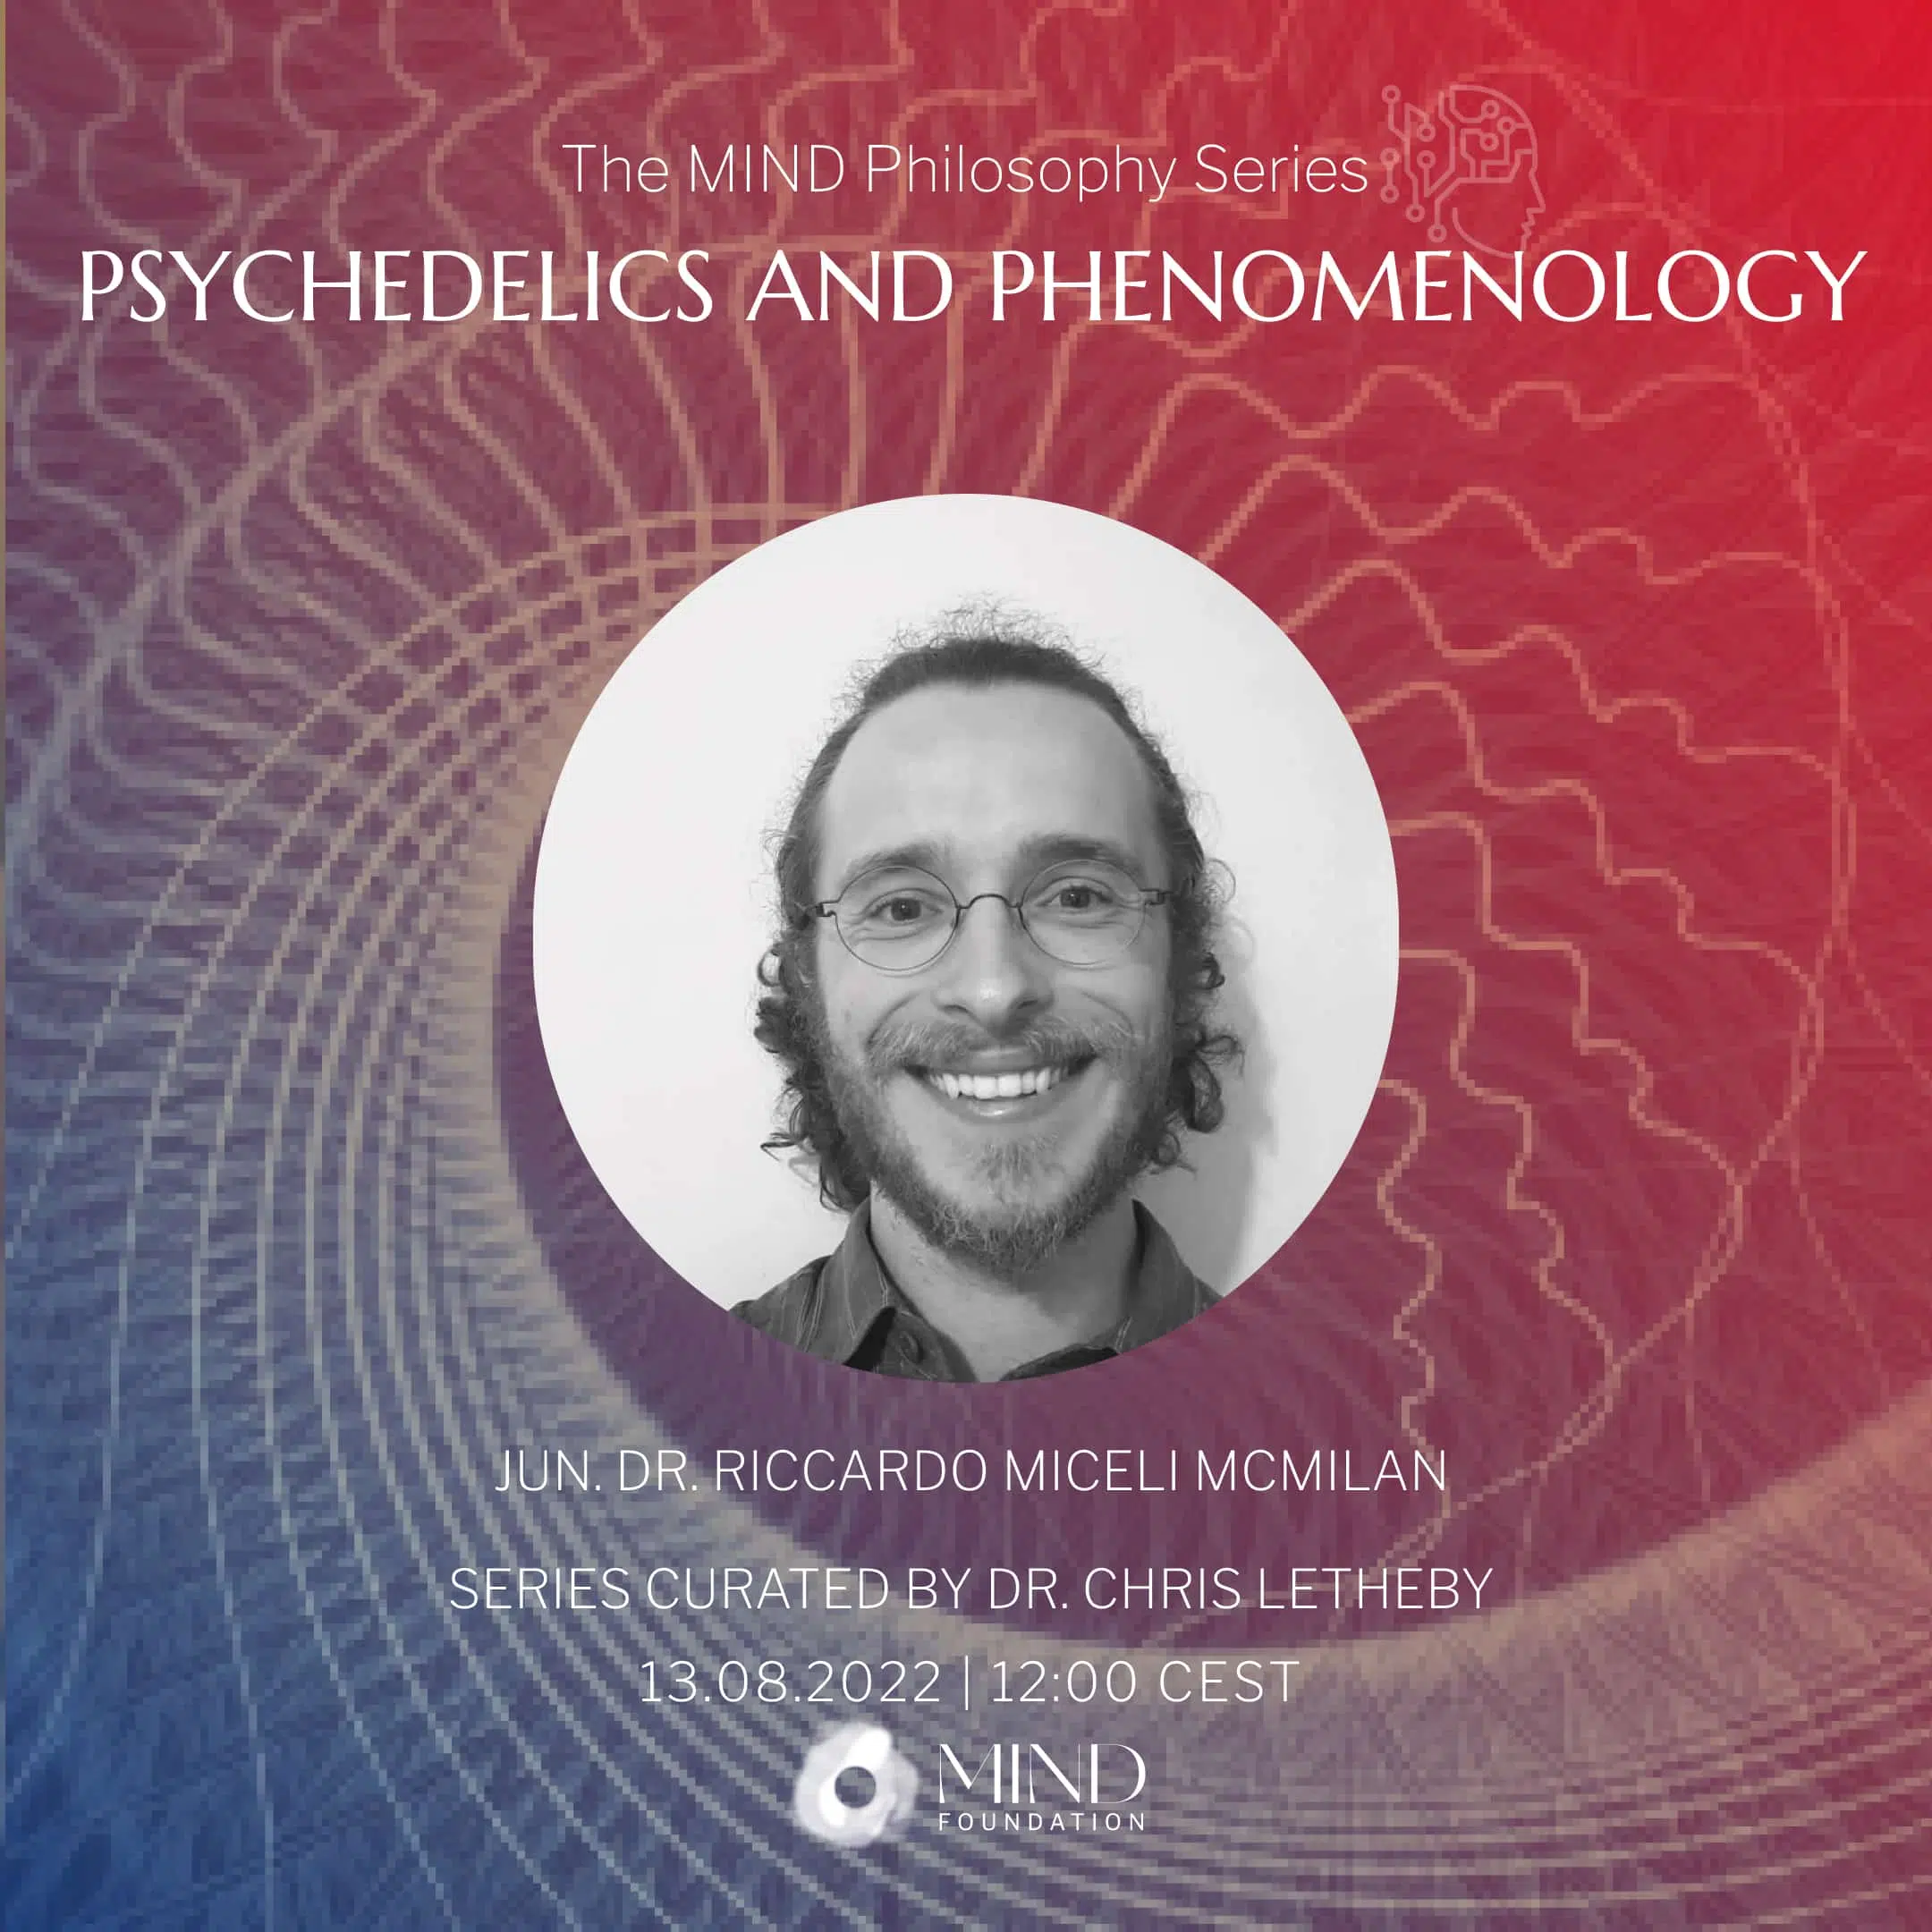 Jun. Dr. Ricardo Miceli McMilan – Psychedelics and phenomenology